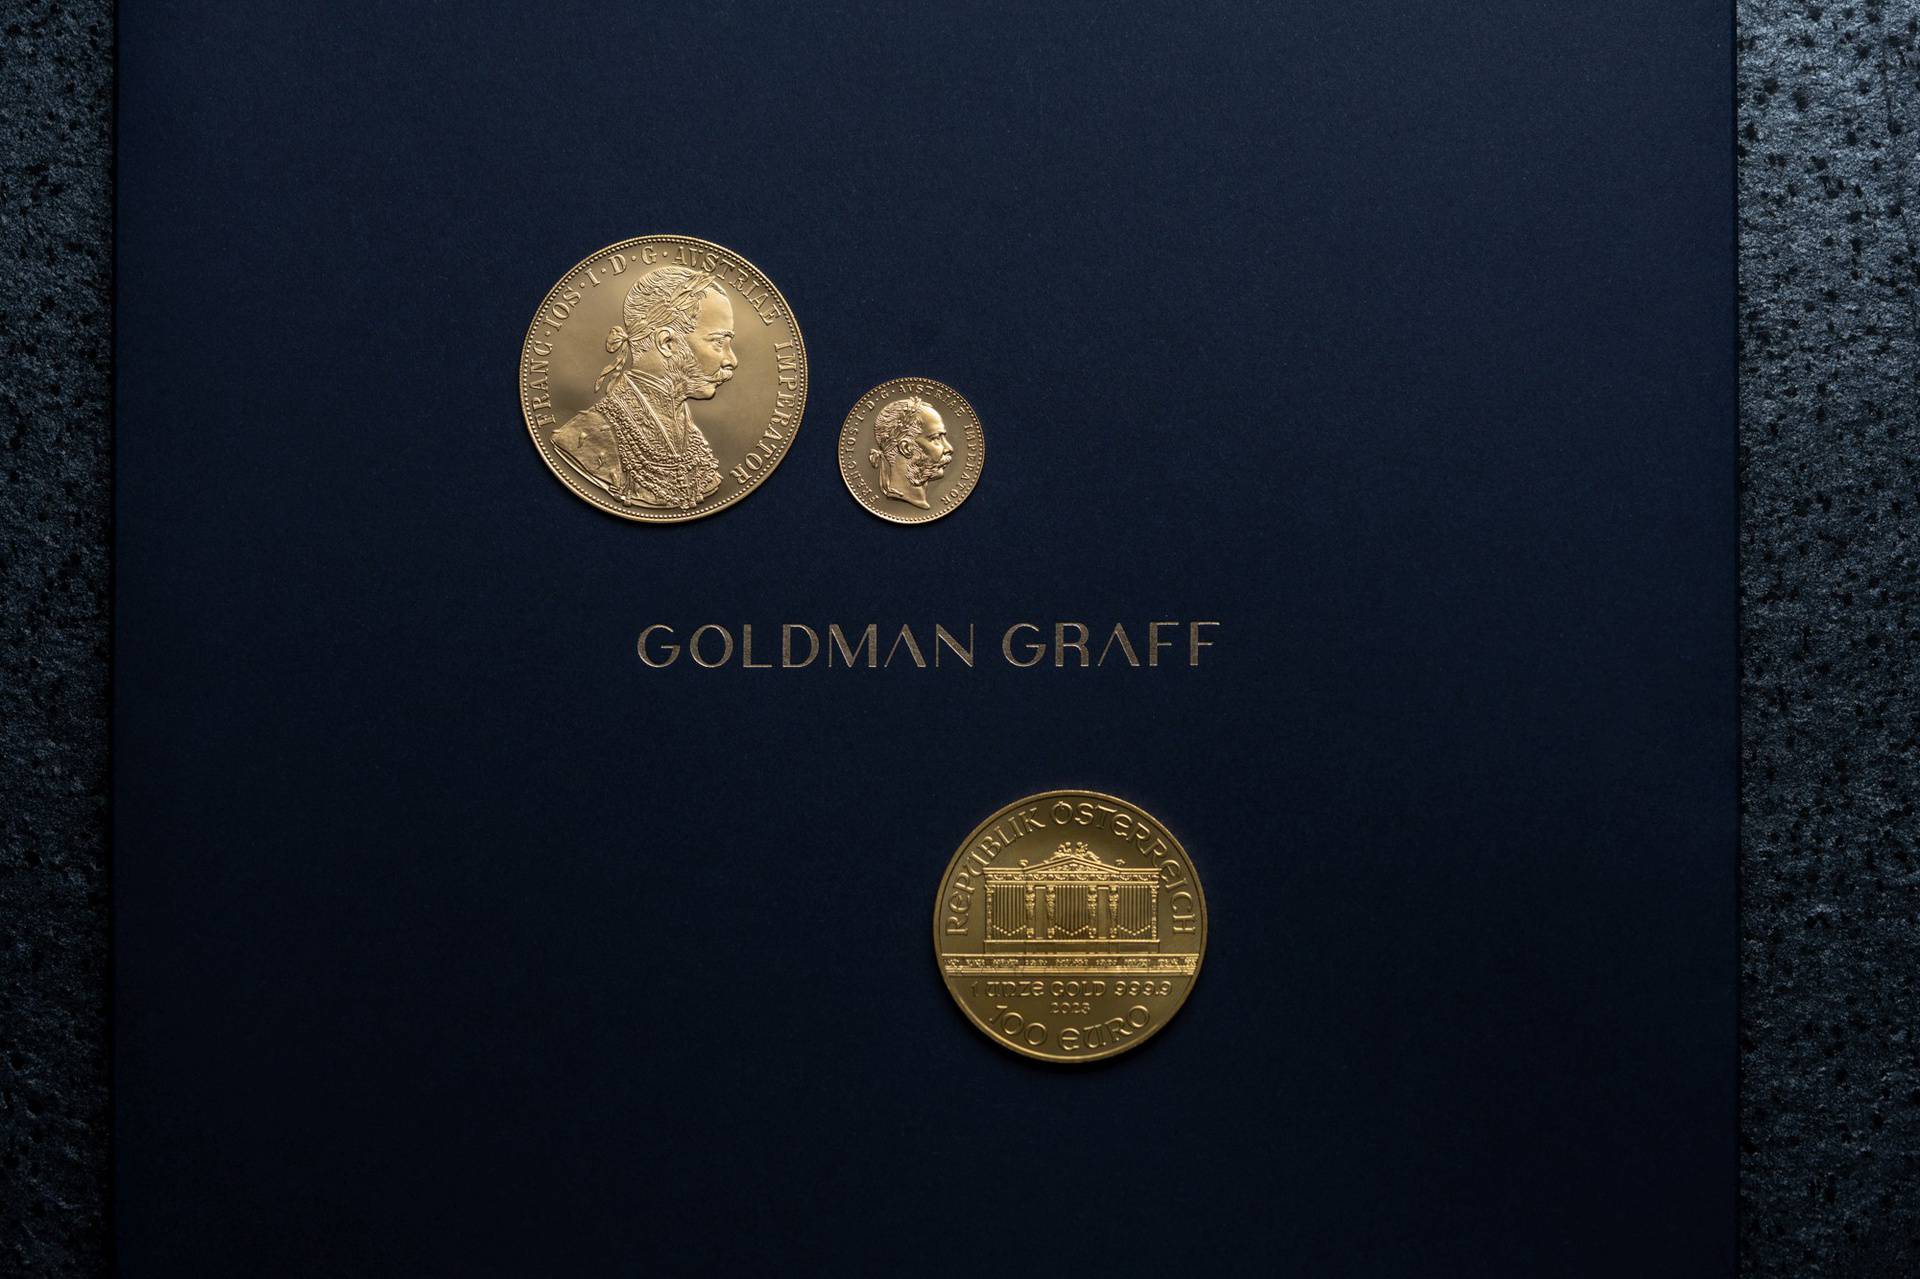 Goldman Graff je prvi izbor za investicijsko zlato: Sigurnost, kvaliteta i stručnost